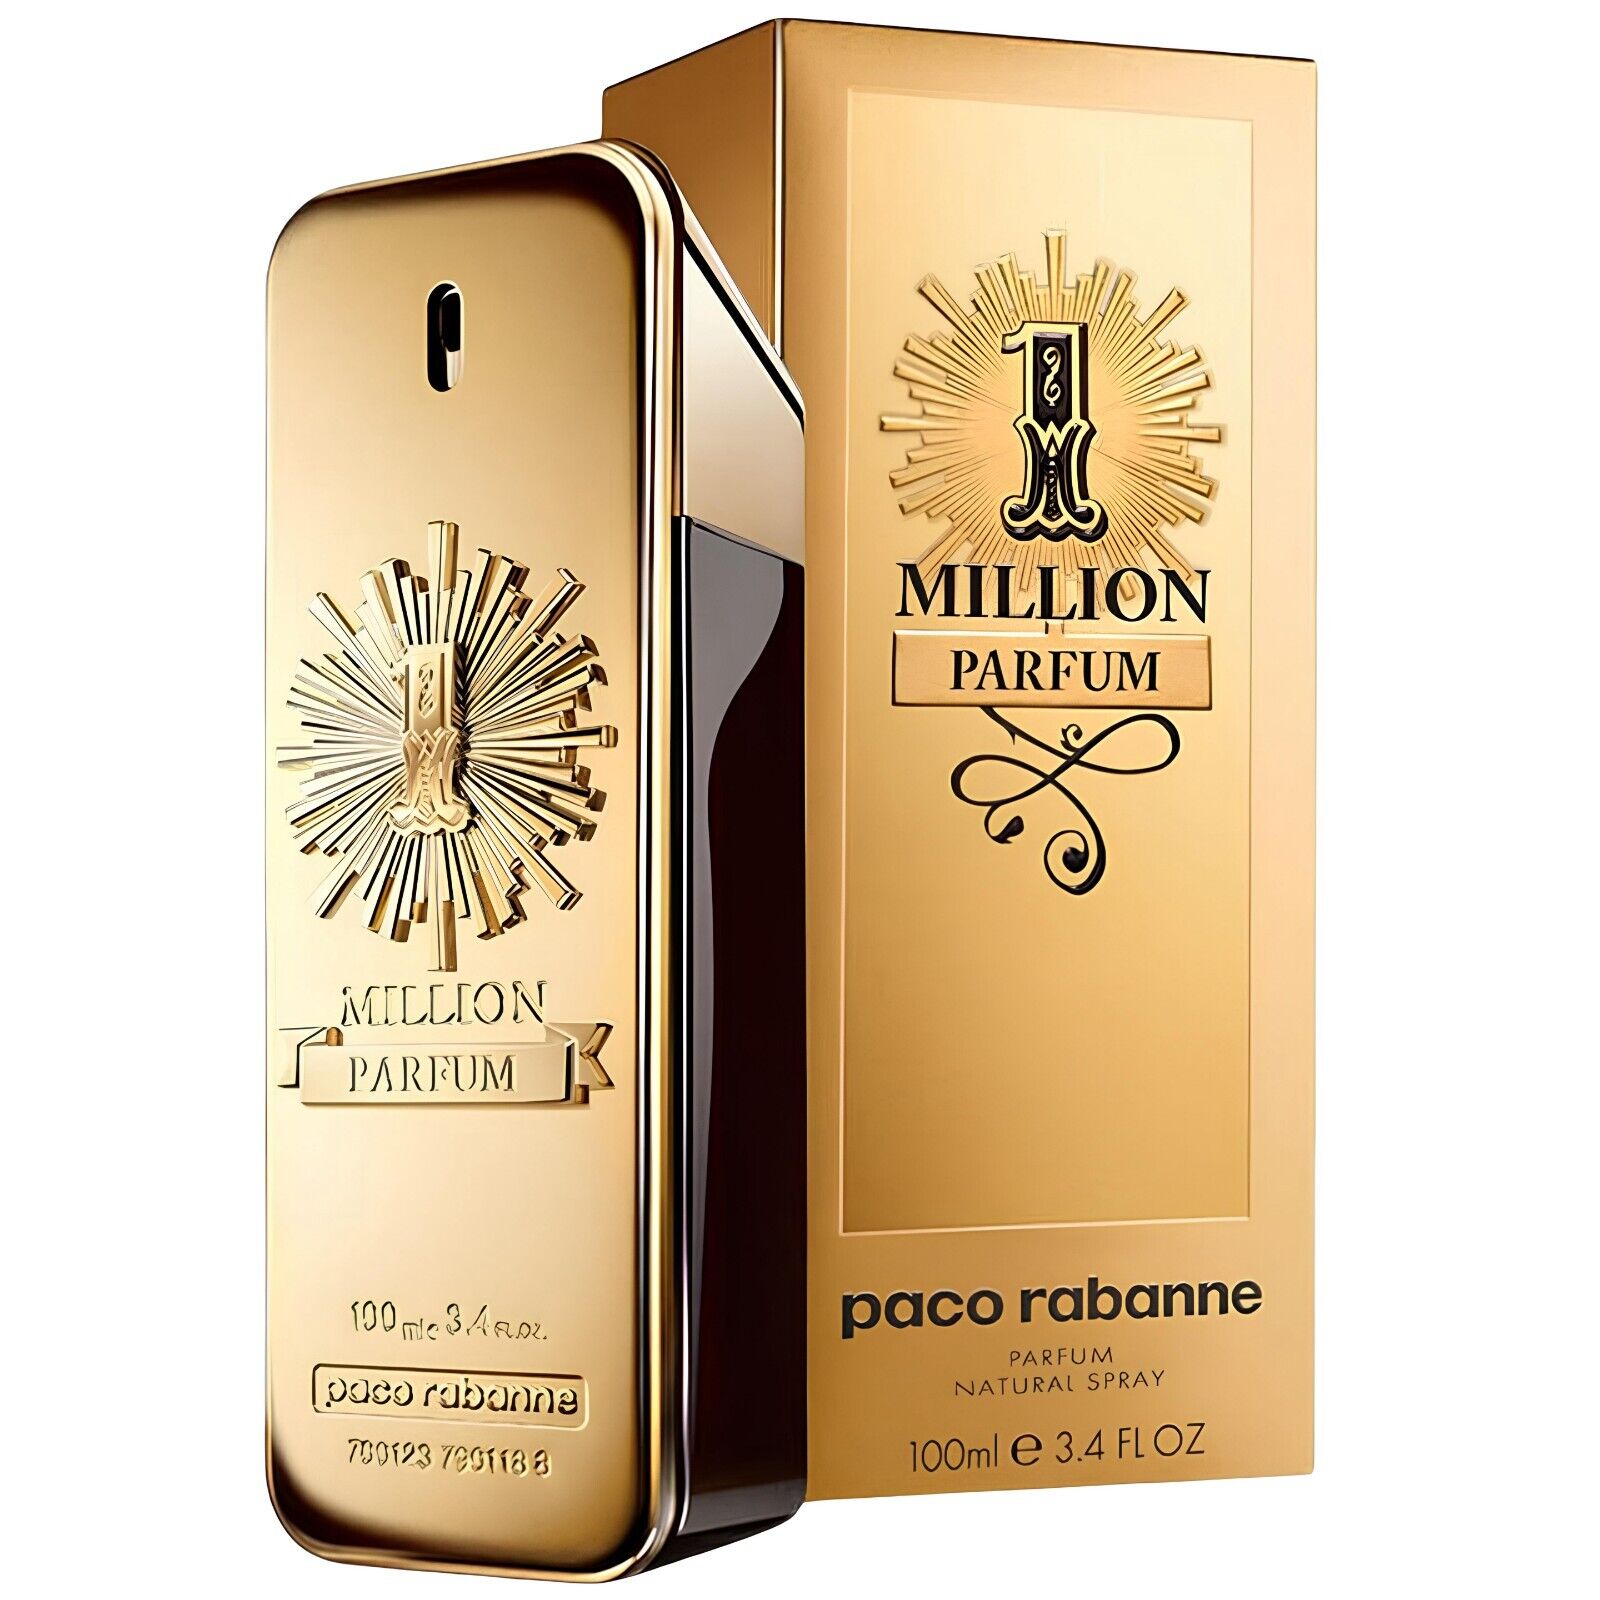 NEW One Million Perfum Páco Rábánně Cologne Men’s Natural Spray 3.4 Oz 100 ml